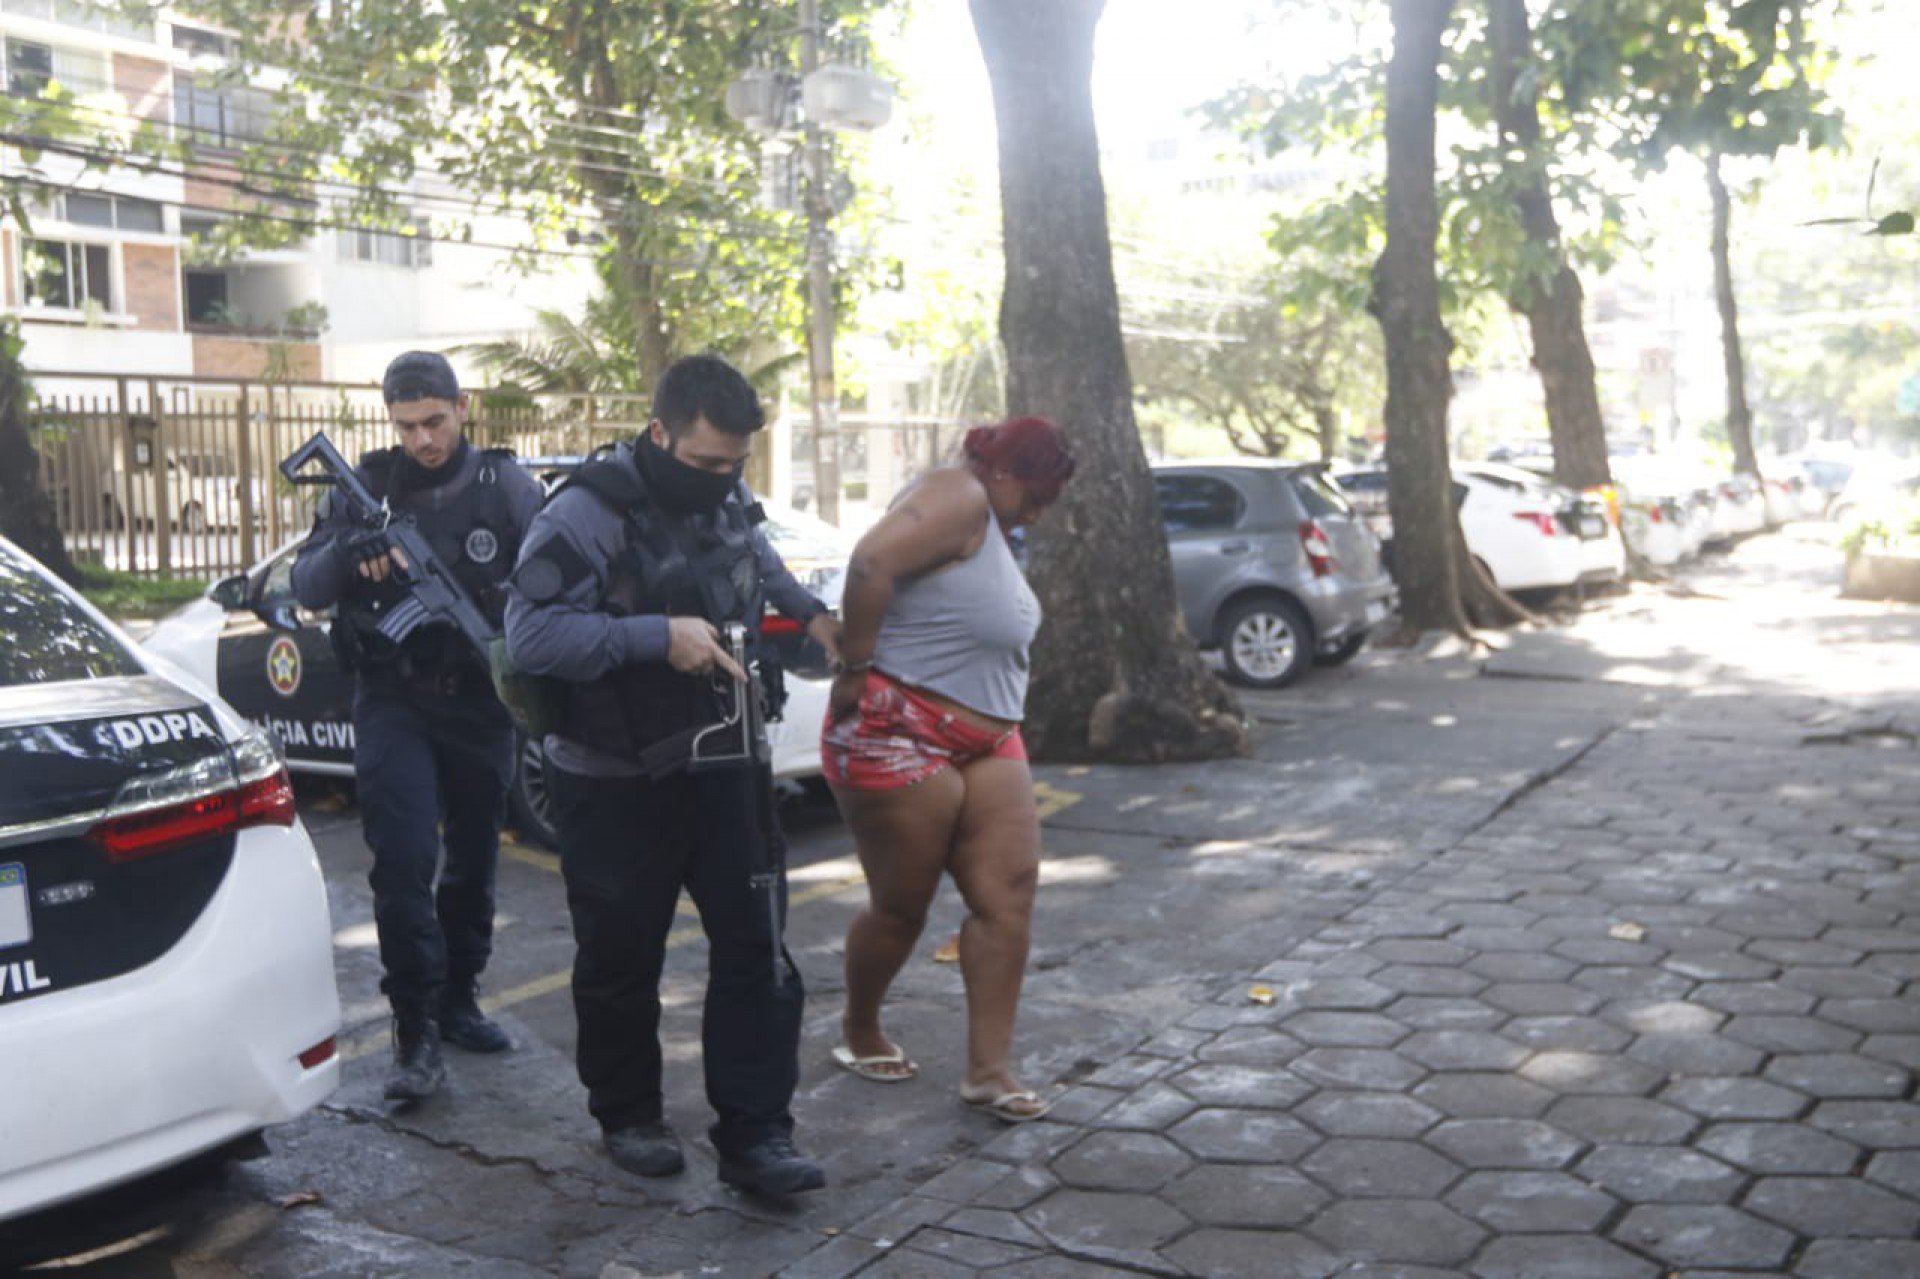  - Divulgação/Ascom Polícia Civil